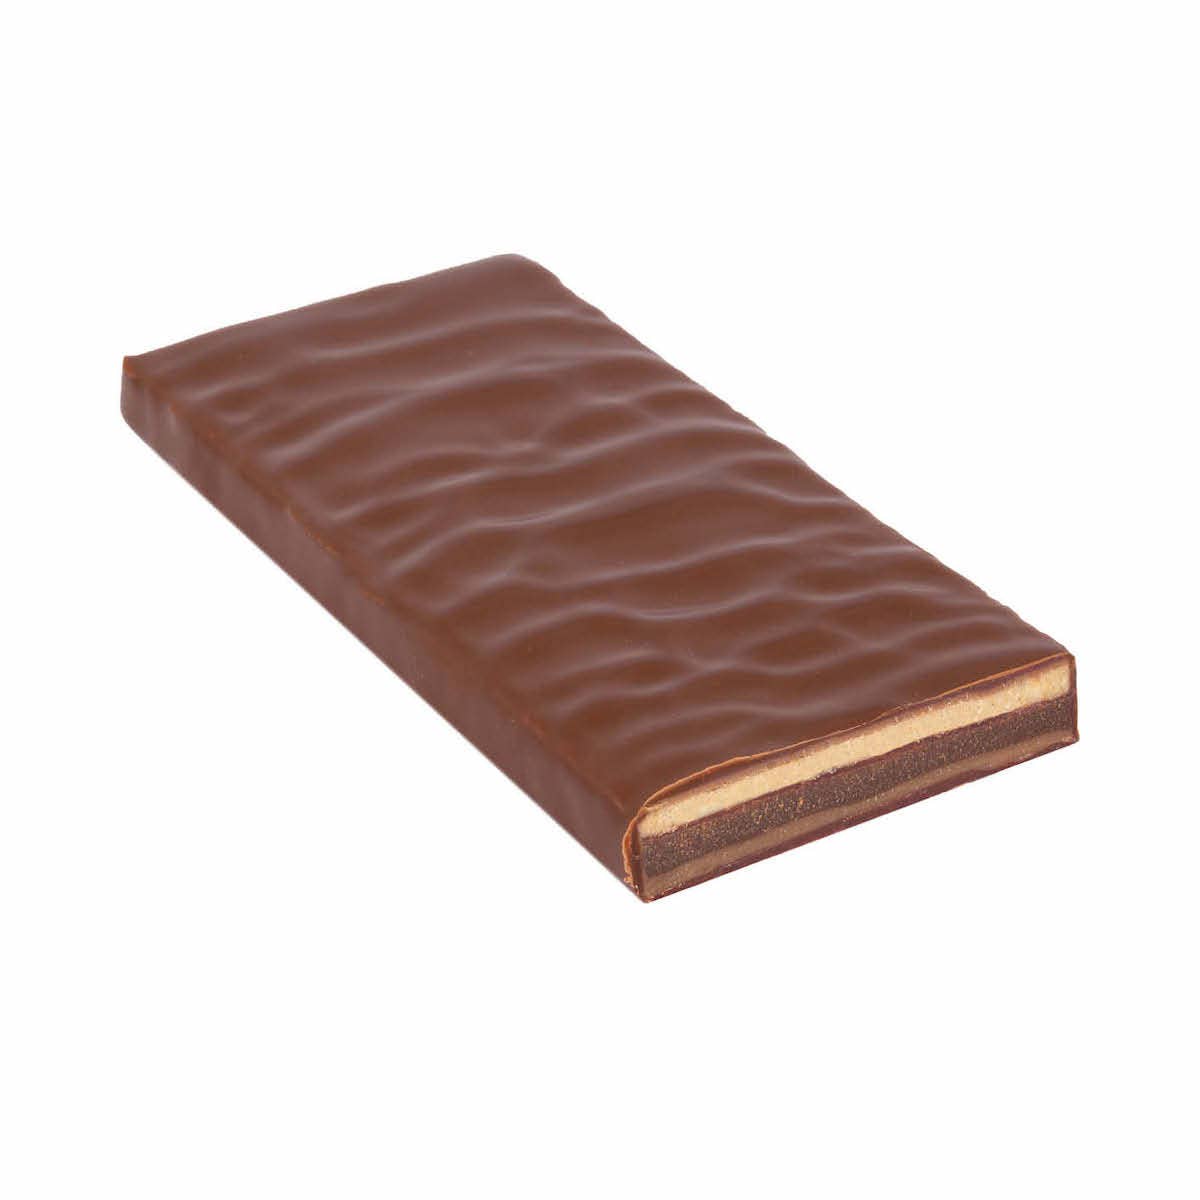 Tiramisu (Hand-scooped Chocolate)